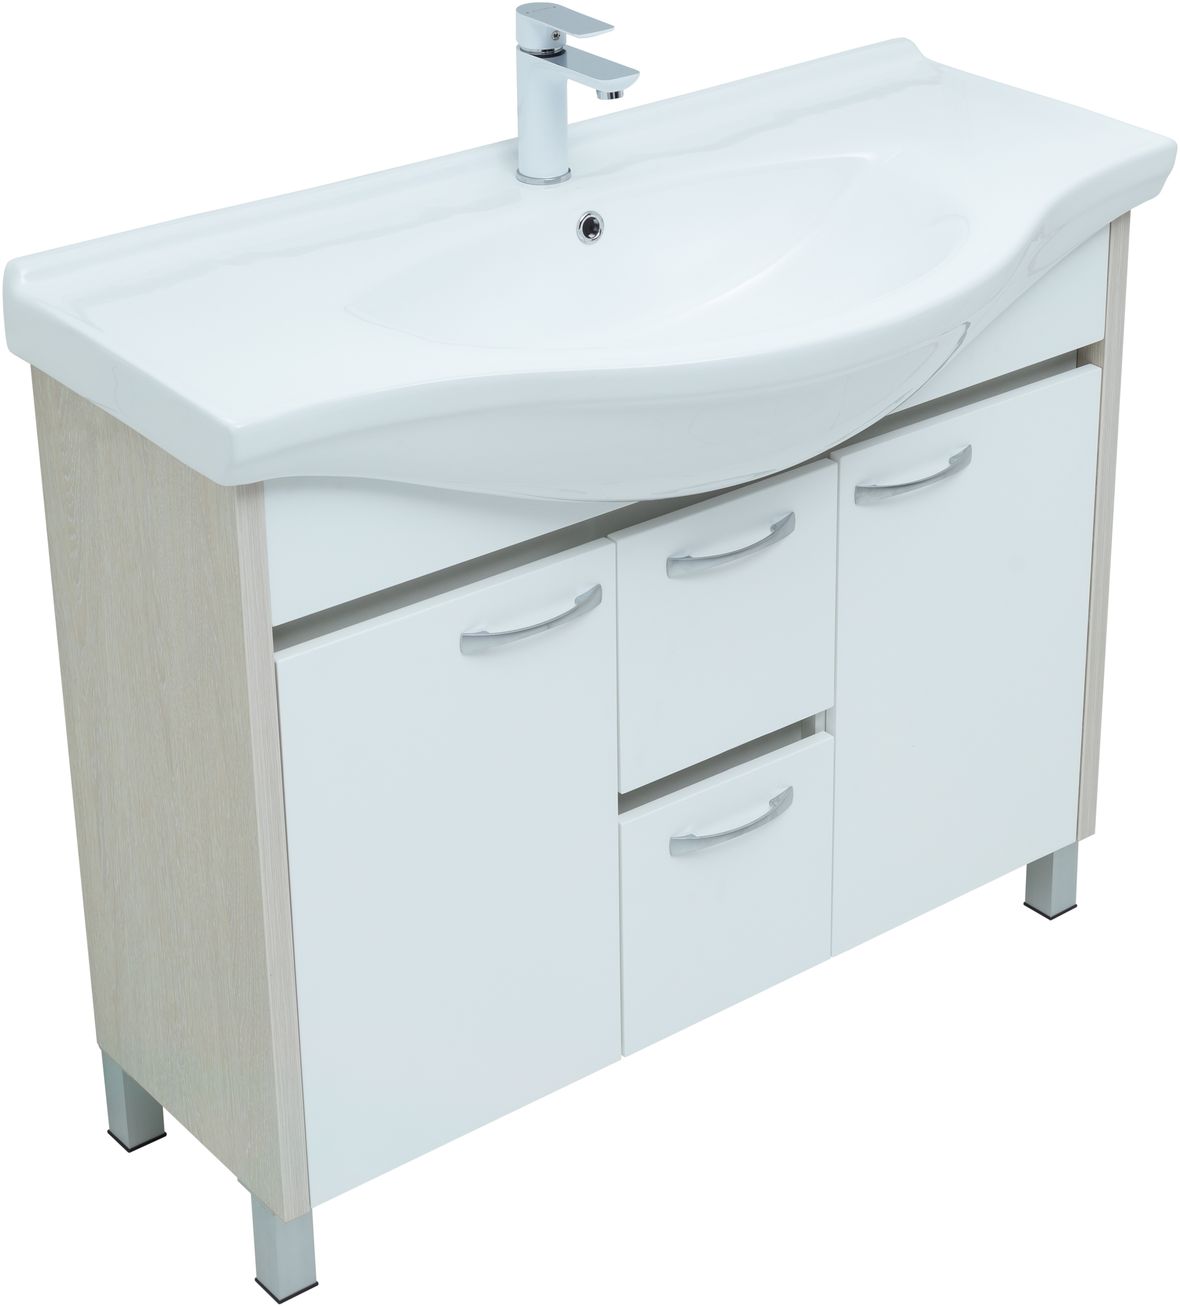 Мебель для ванной Aquanet Донна 102 см напольная 2 ящика и 2 дверцы, дуб, белый, цвет хром 274164 - фото 6